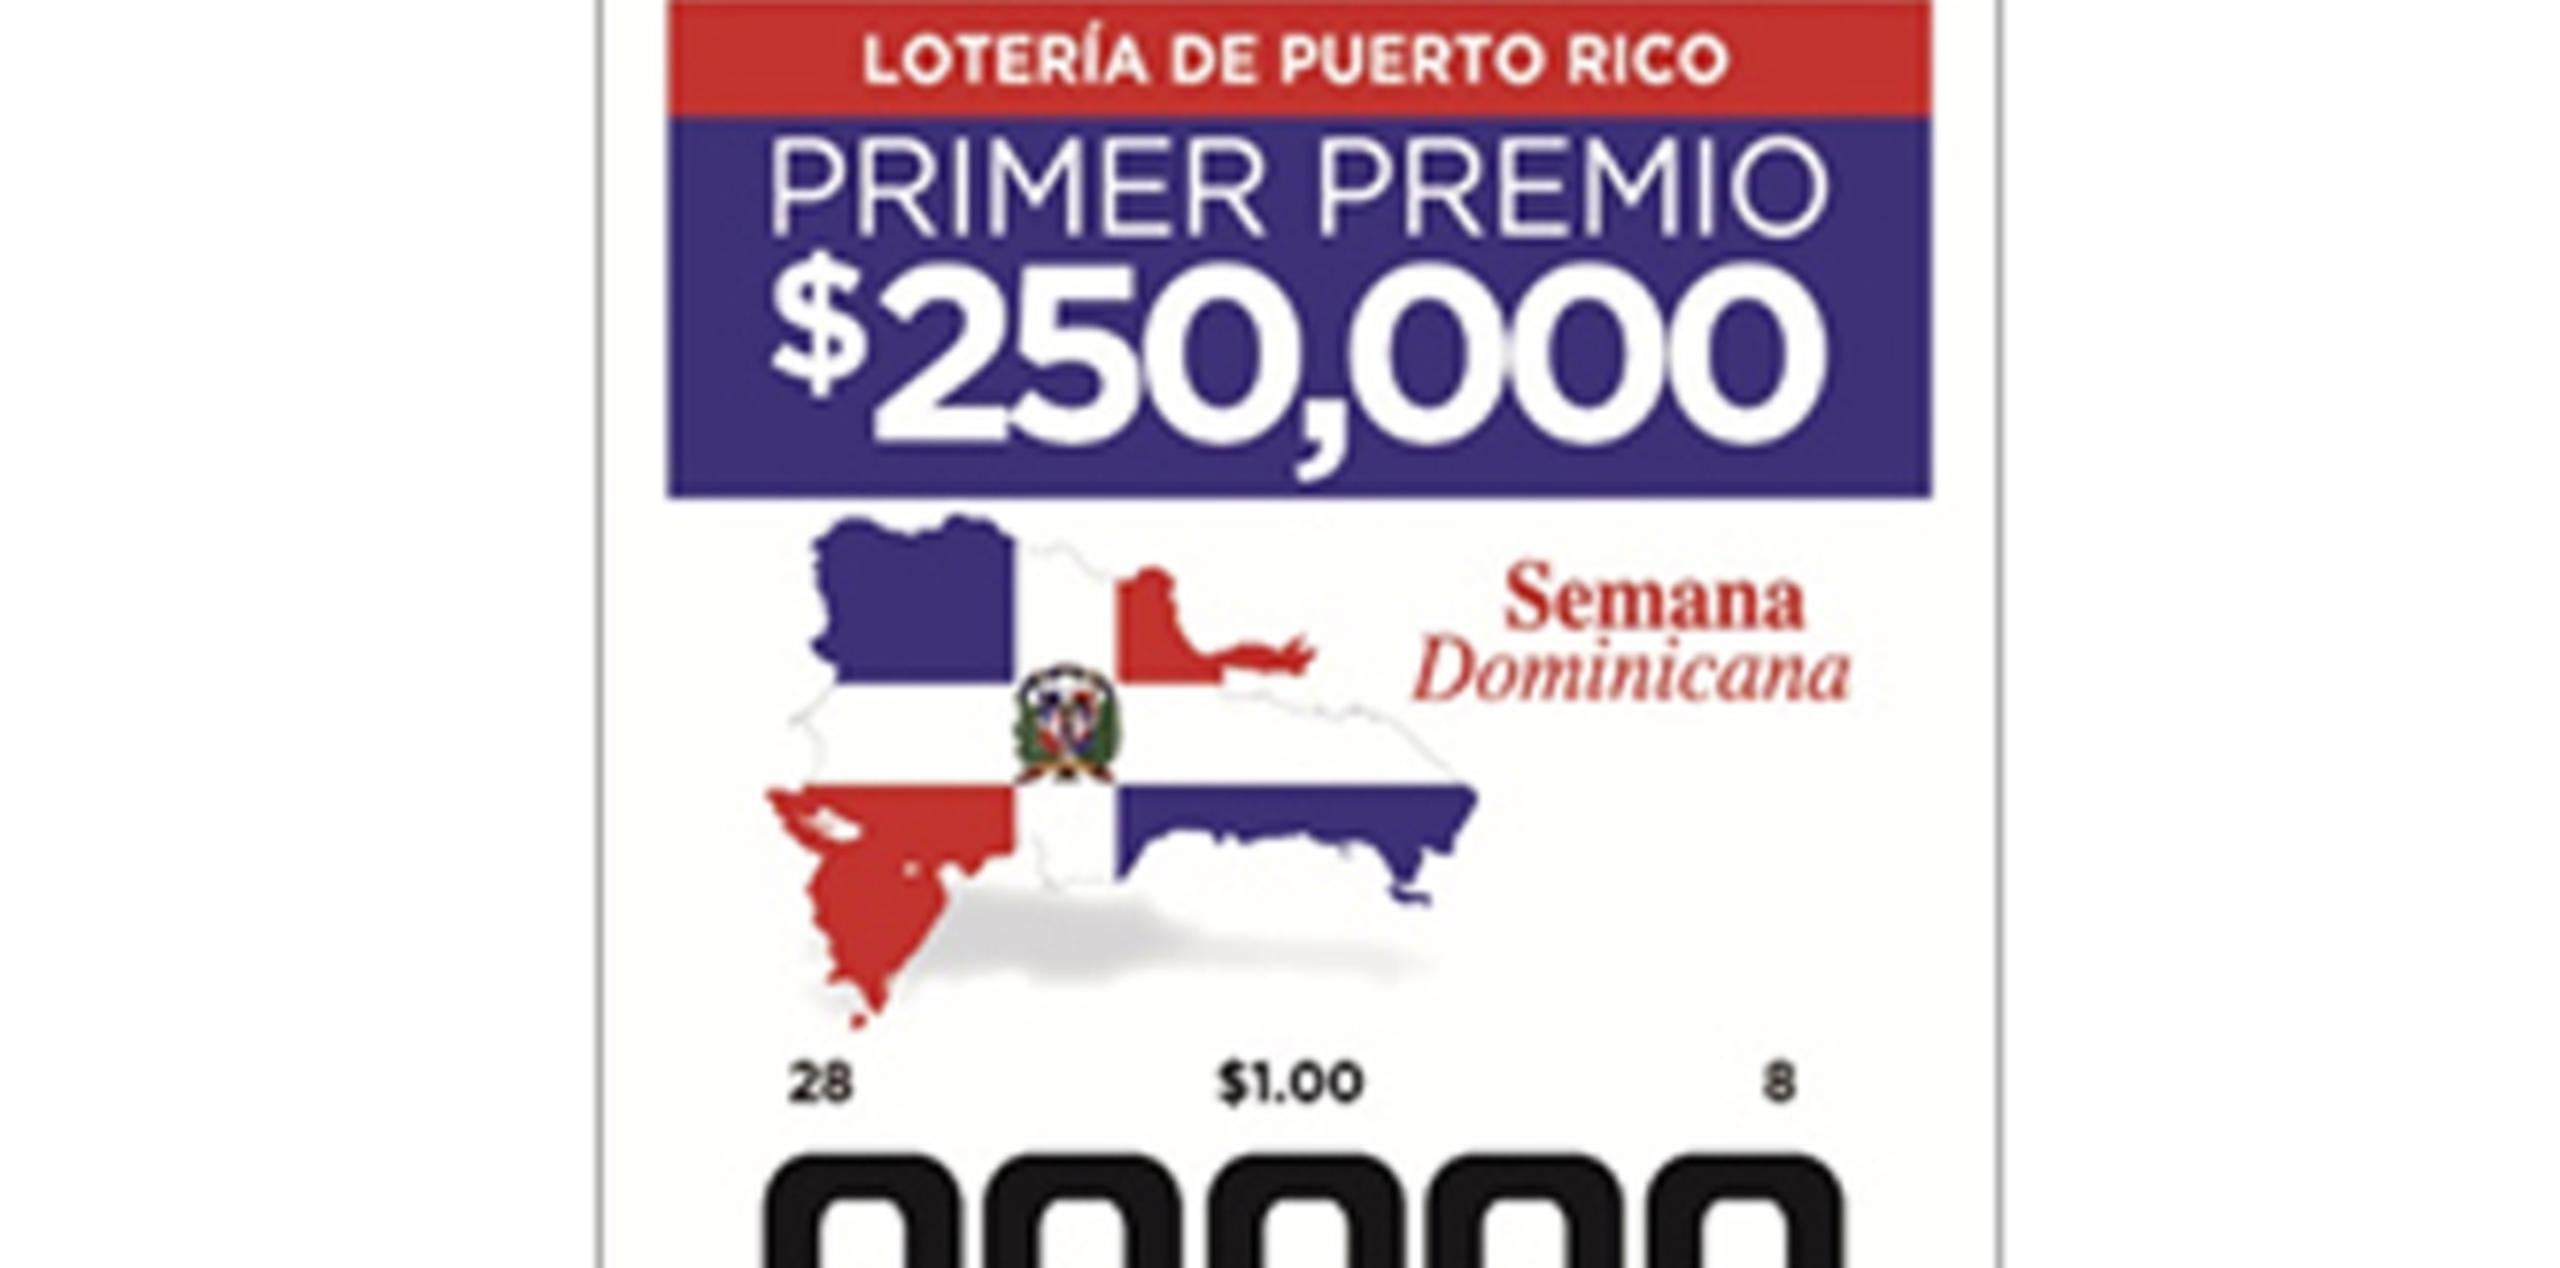 La Lotería busca agradecer el apoyo de la comunidad dominicana a los sorteos de la Lotería Tradicional de Puerto Rico. (Suministrada)